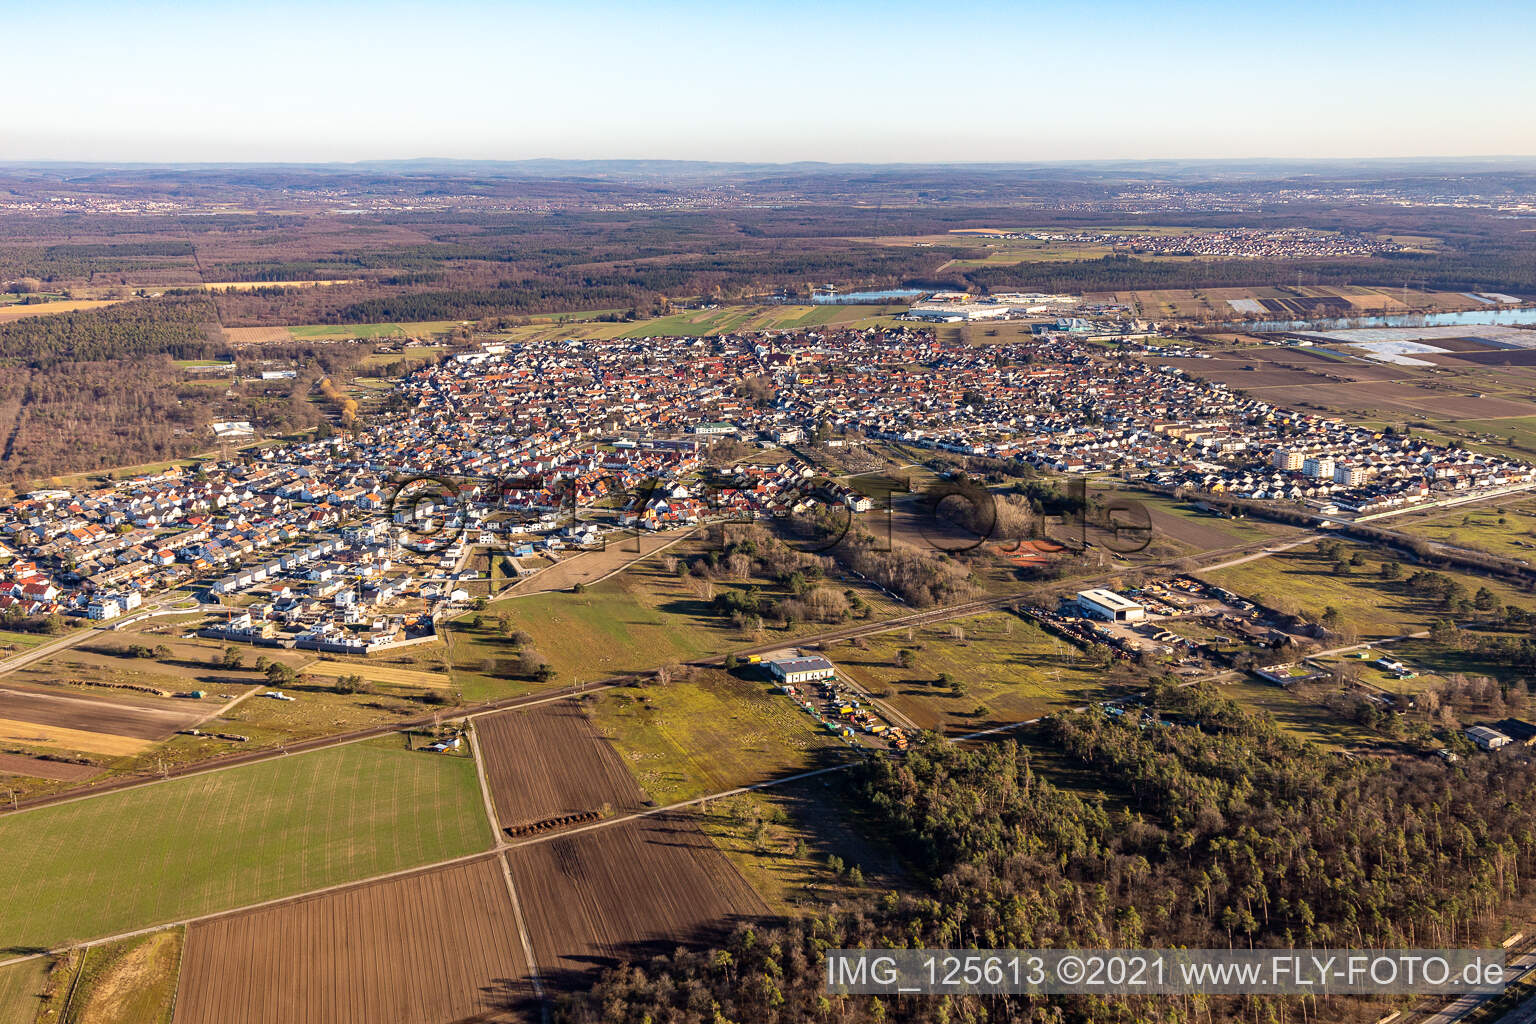 Vue aérienne de Vue de la ville en bordure des champs et zones agricoles du Wiesental à Waghäusel dans le département Bade-Wurtemberg, Allemagne